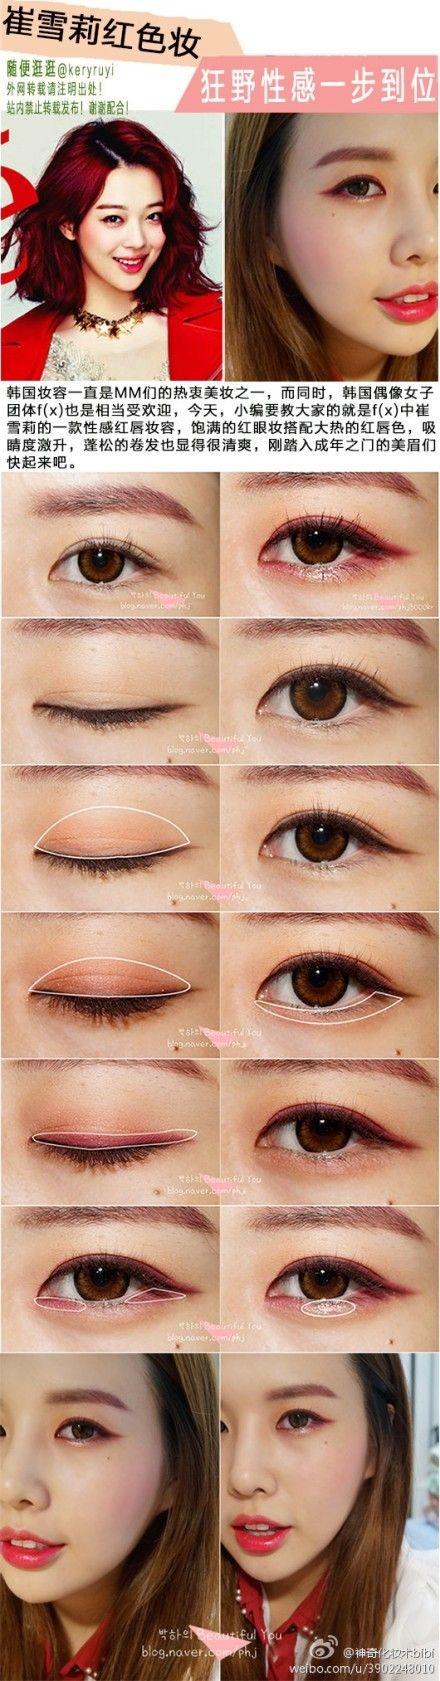 asian-makeup-artist-tutorial-50_5 Les voor Aziatische make-upartiesten